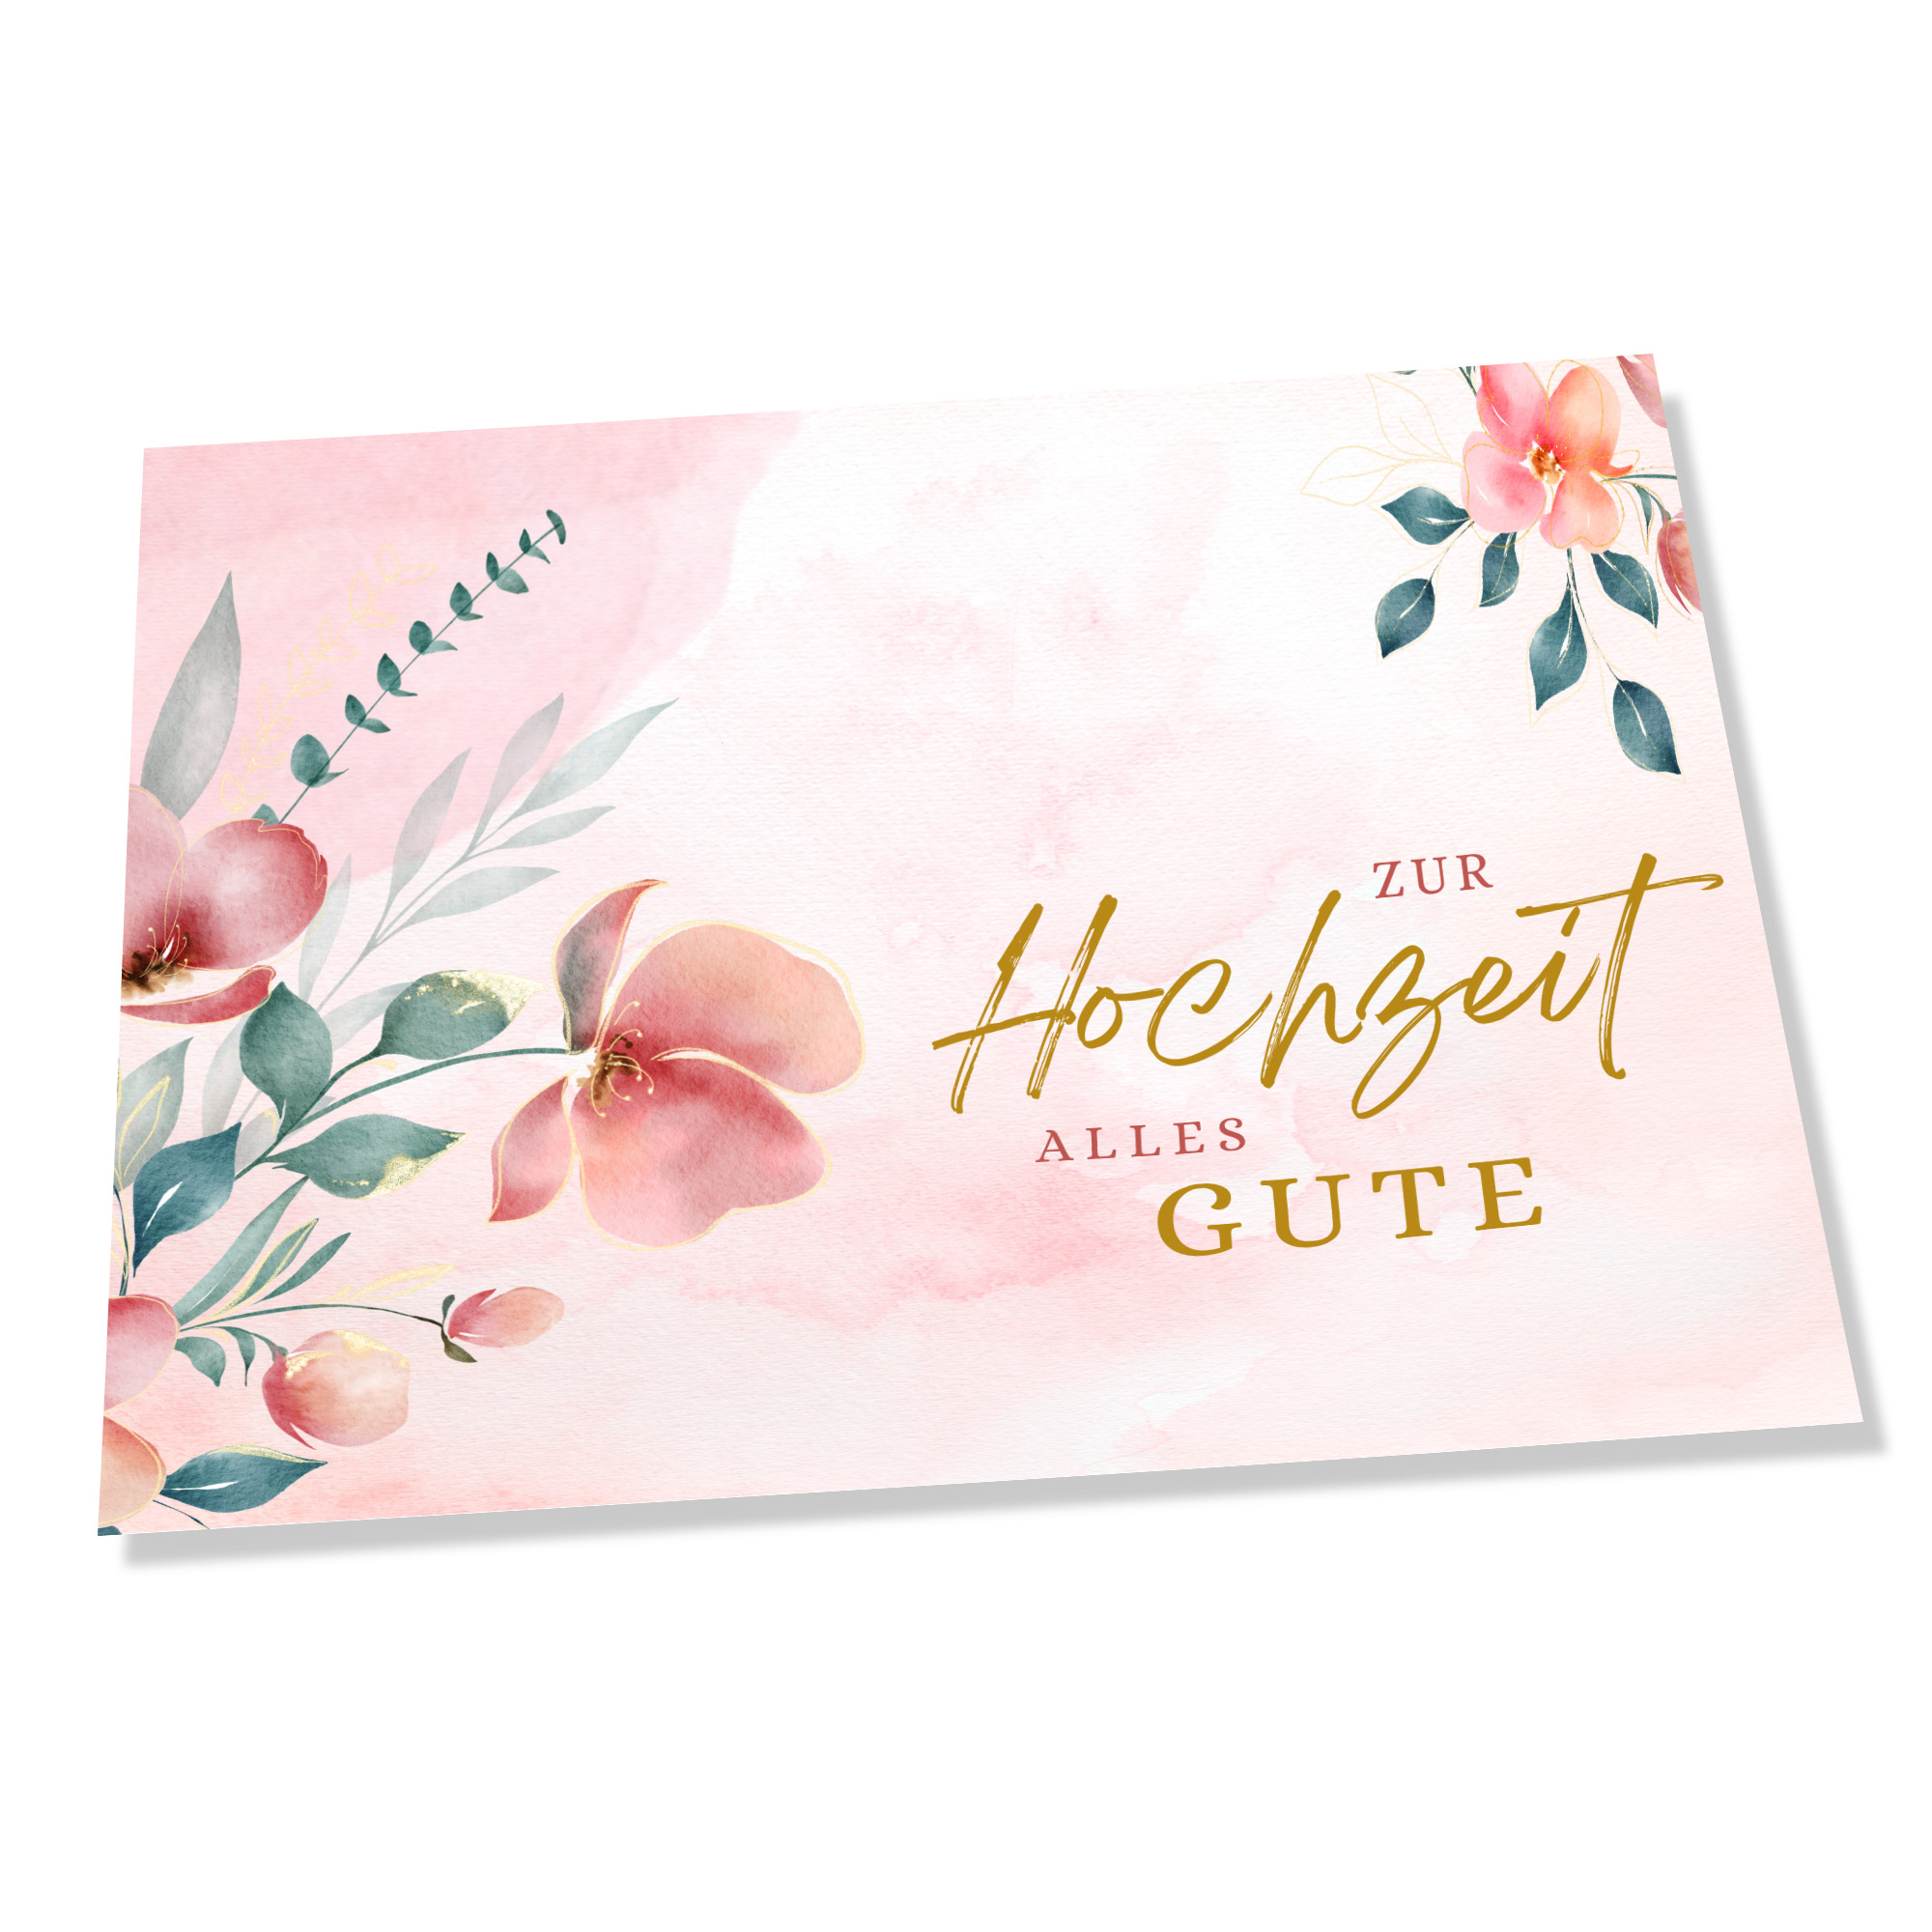 Gratisgrußkarte zur Hochzeit mit Blumen Motiv